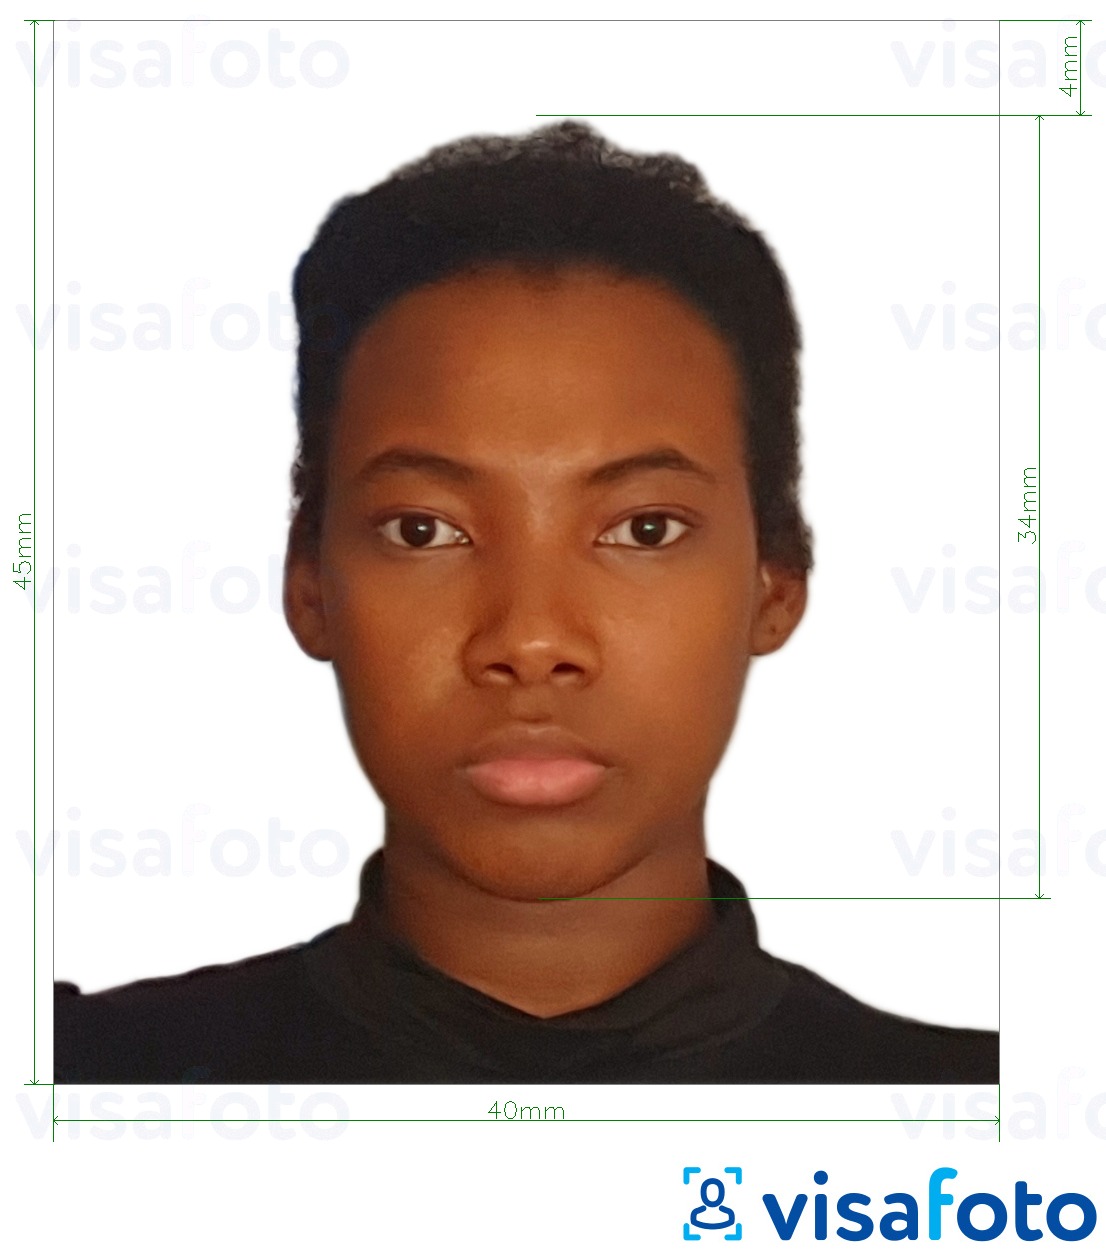 坦桑尼亚护照40x45毫米（4x4.5厘米） 的标准尺寸照片示例